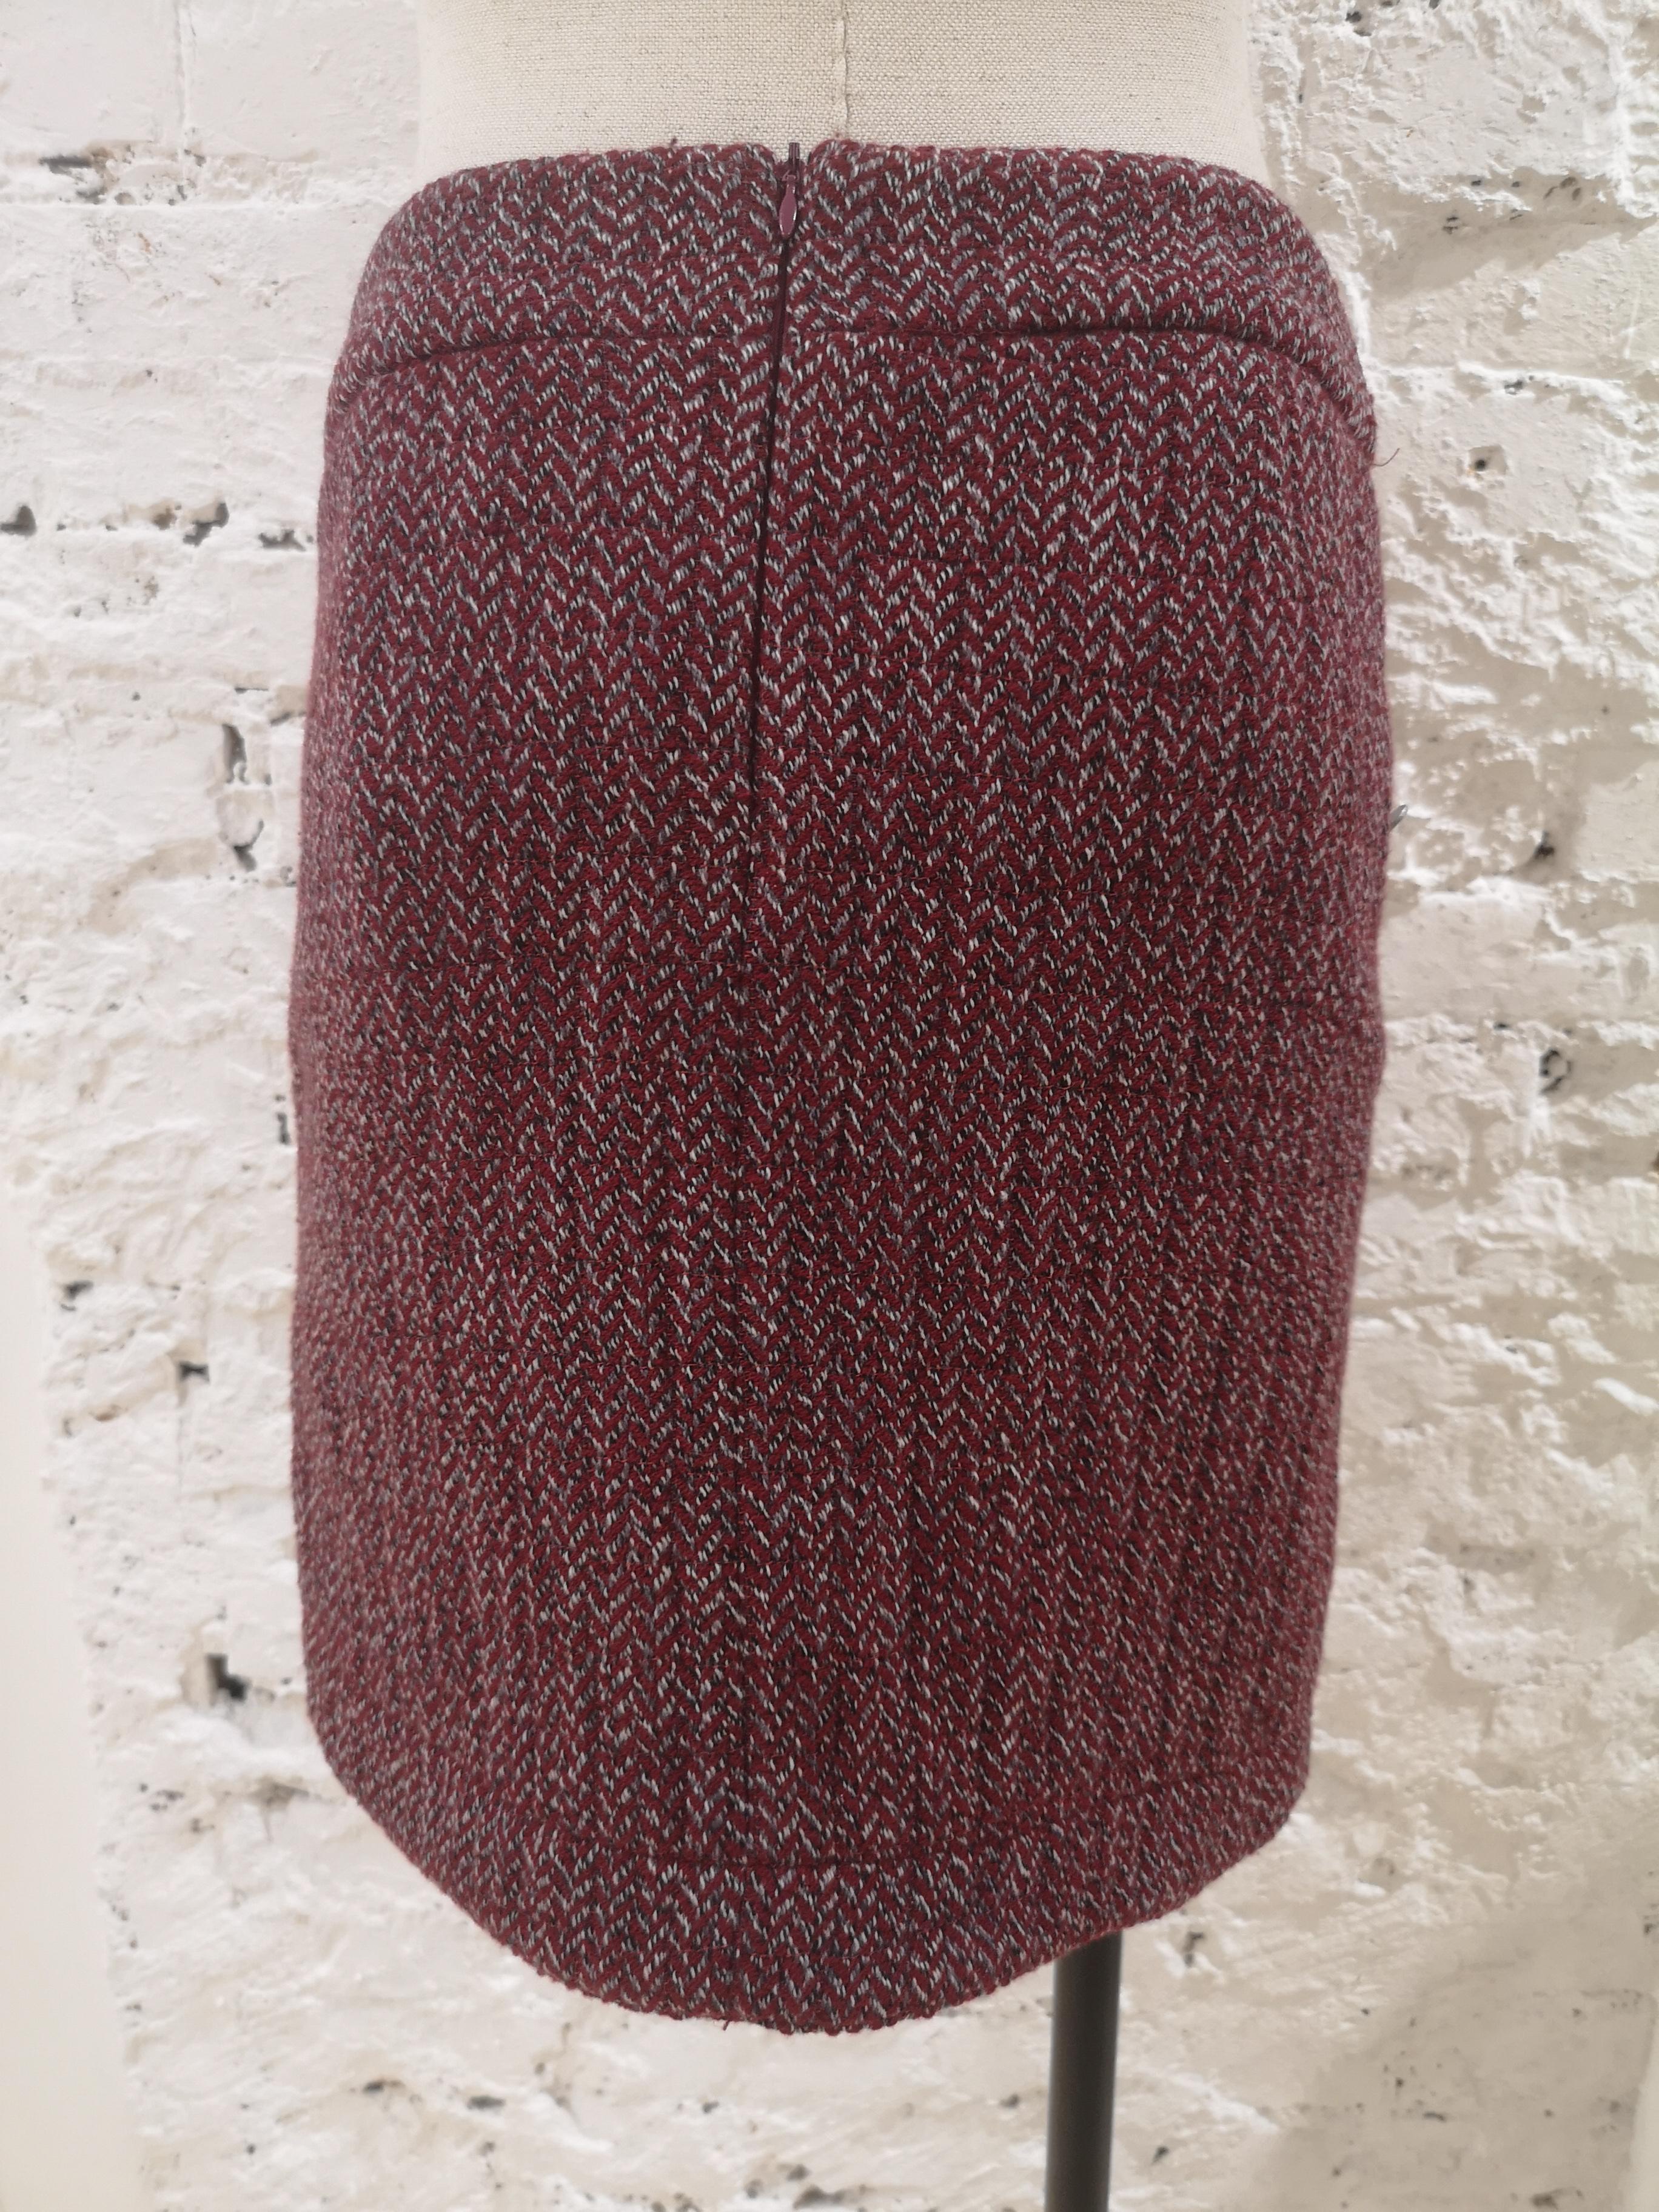 Chanel bordeaux wool skirt 
measurements: waist 80 cm * lenght 46 cm
Size FR 38